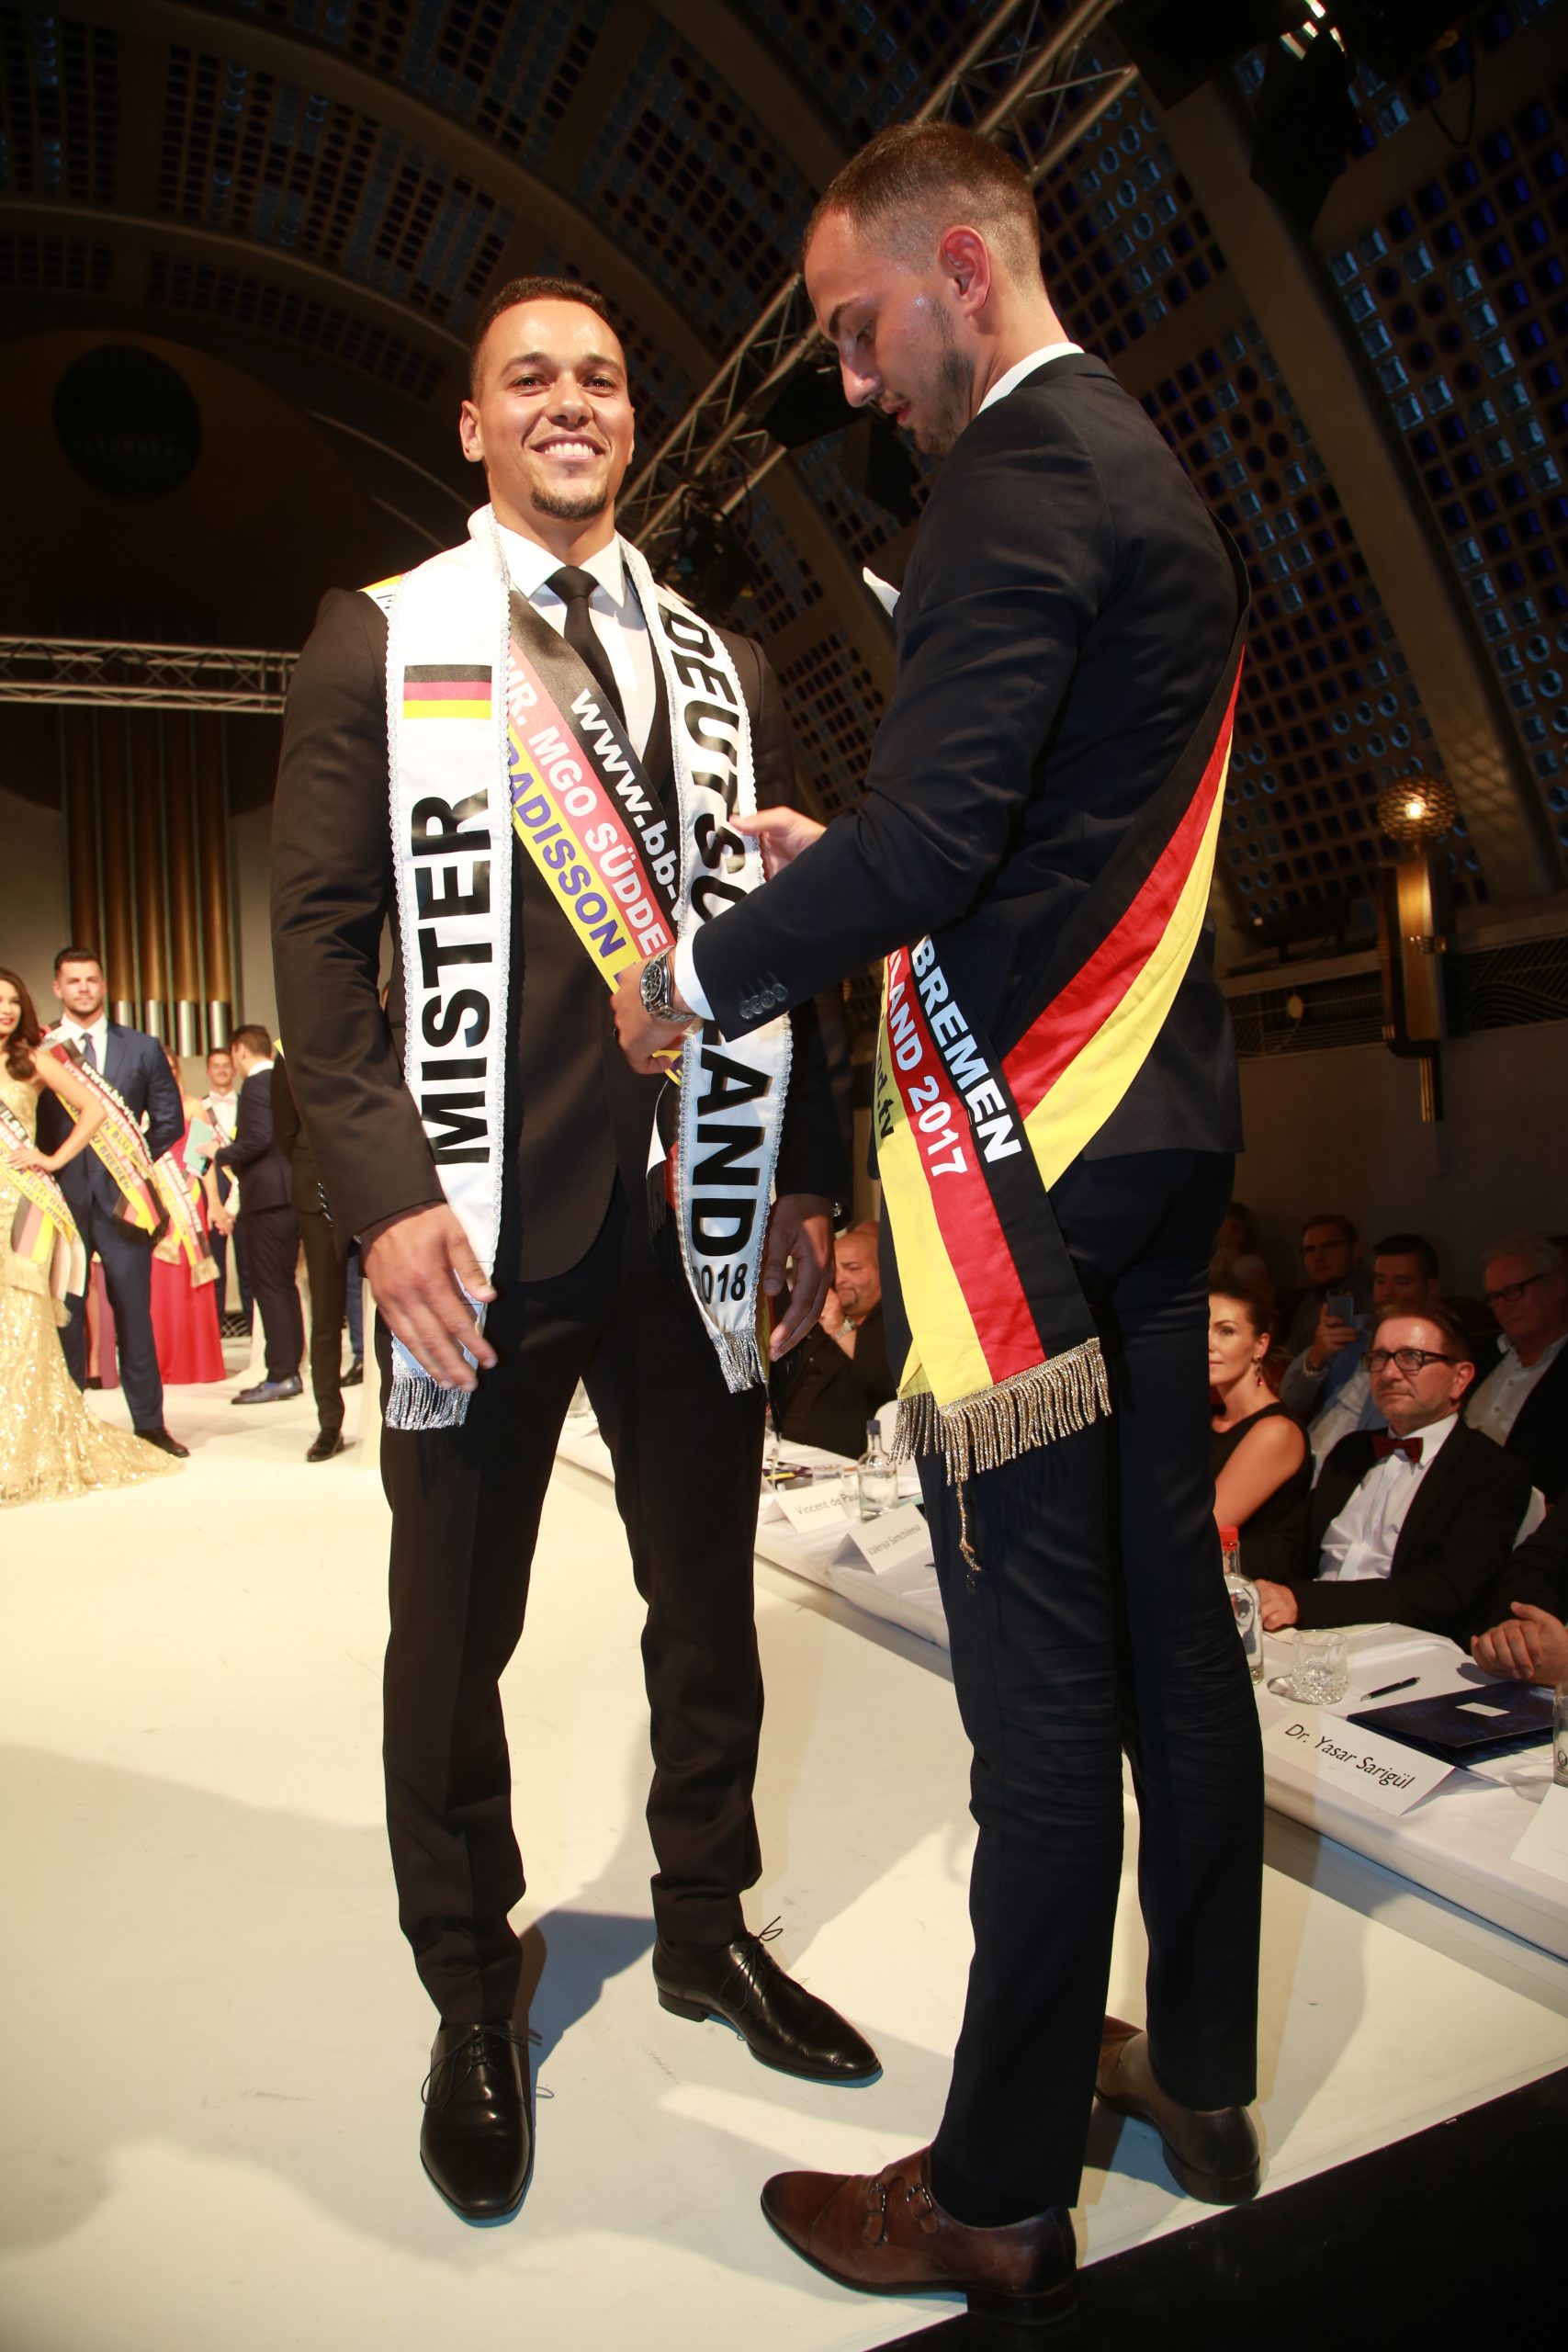 Glückwunsch an die Sieger Miss & Mr. Deutschland 2018 – MGO-Miss Germany  Organisation